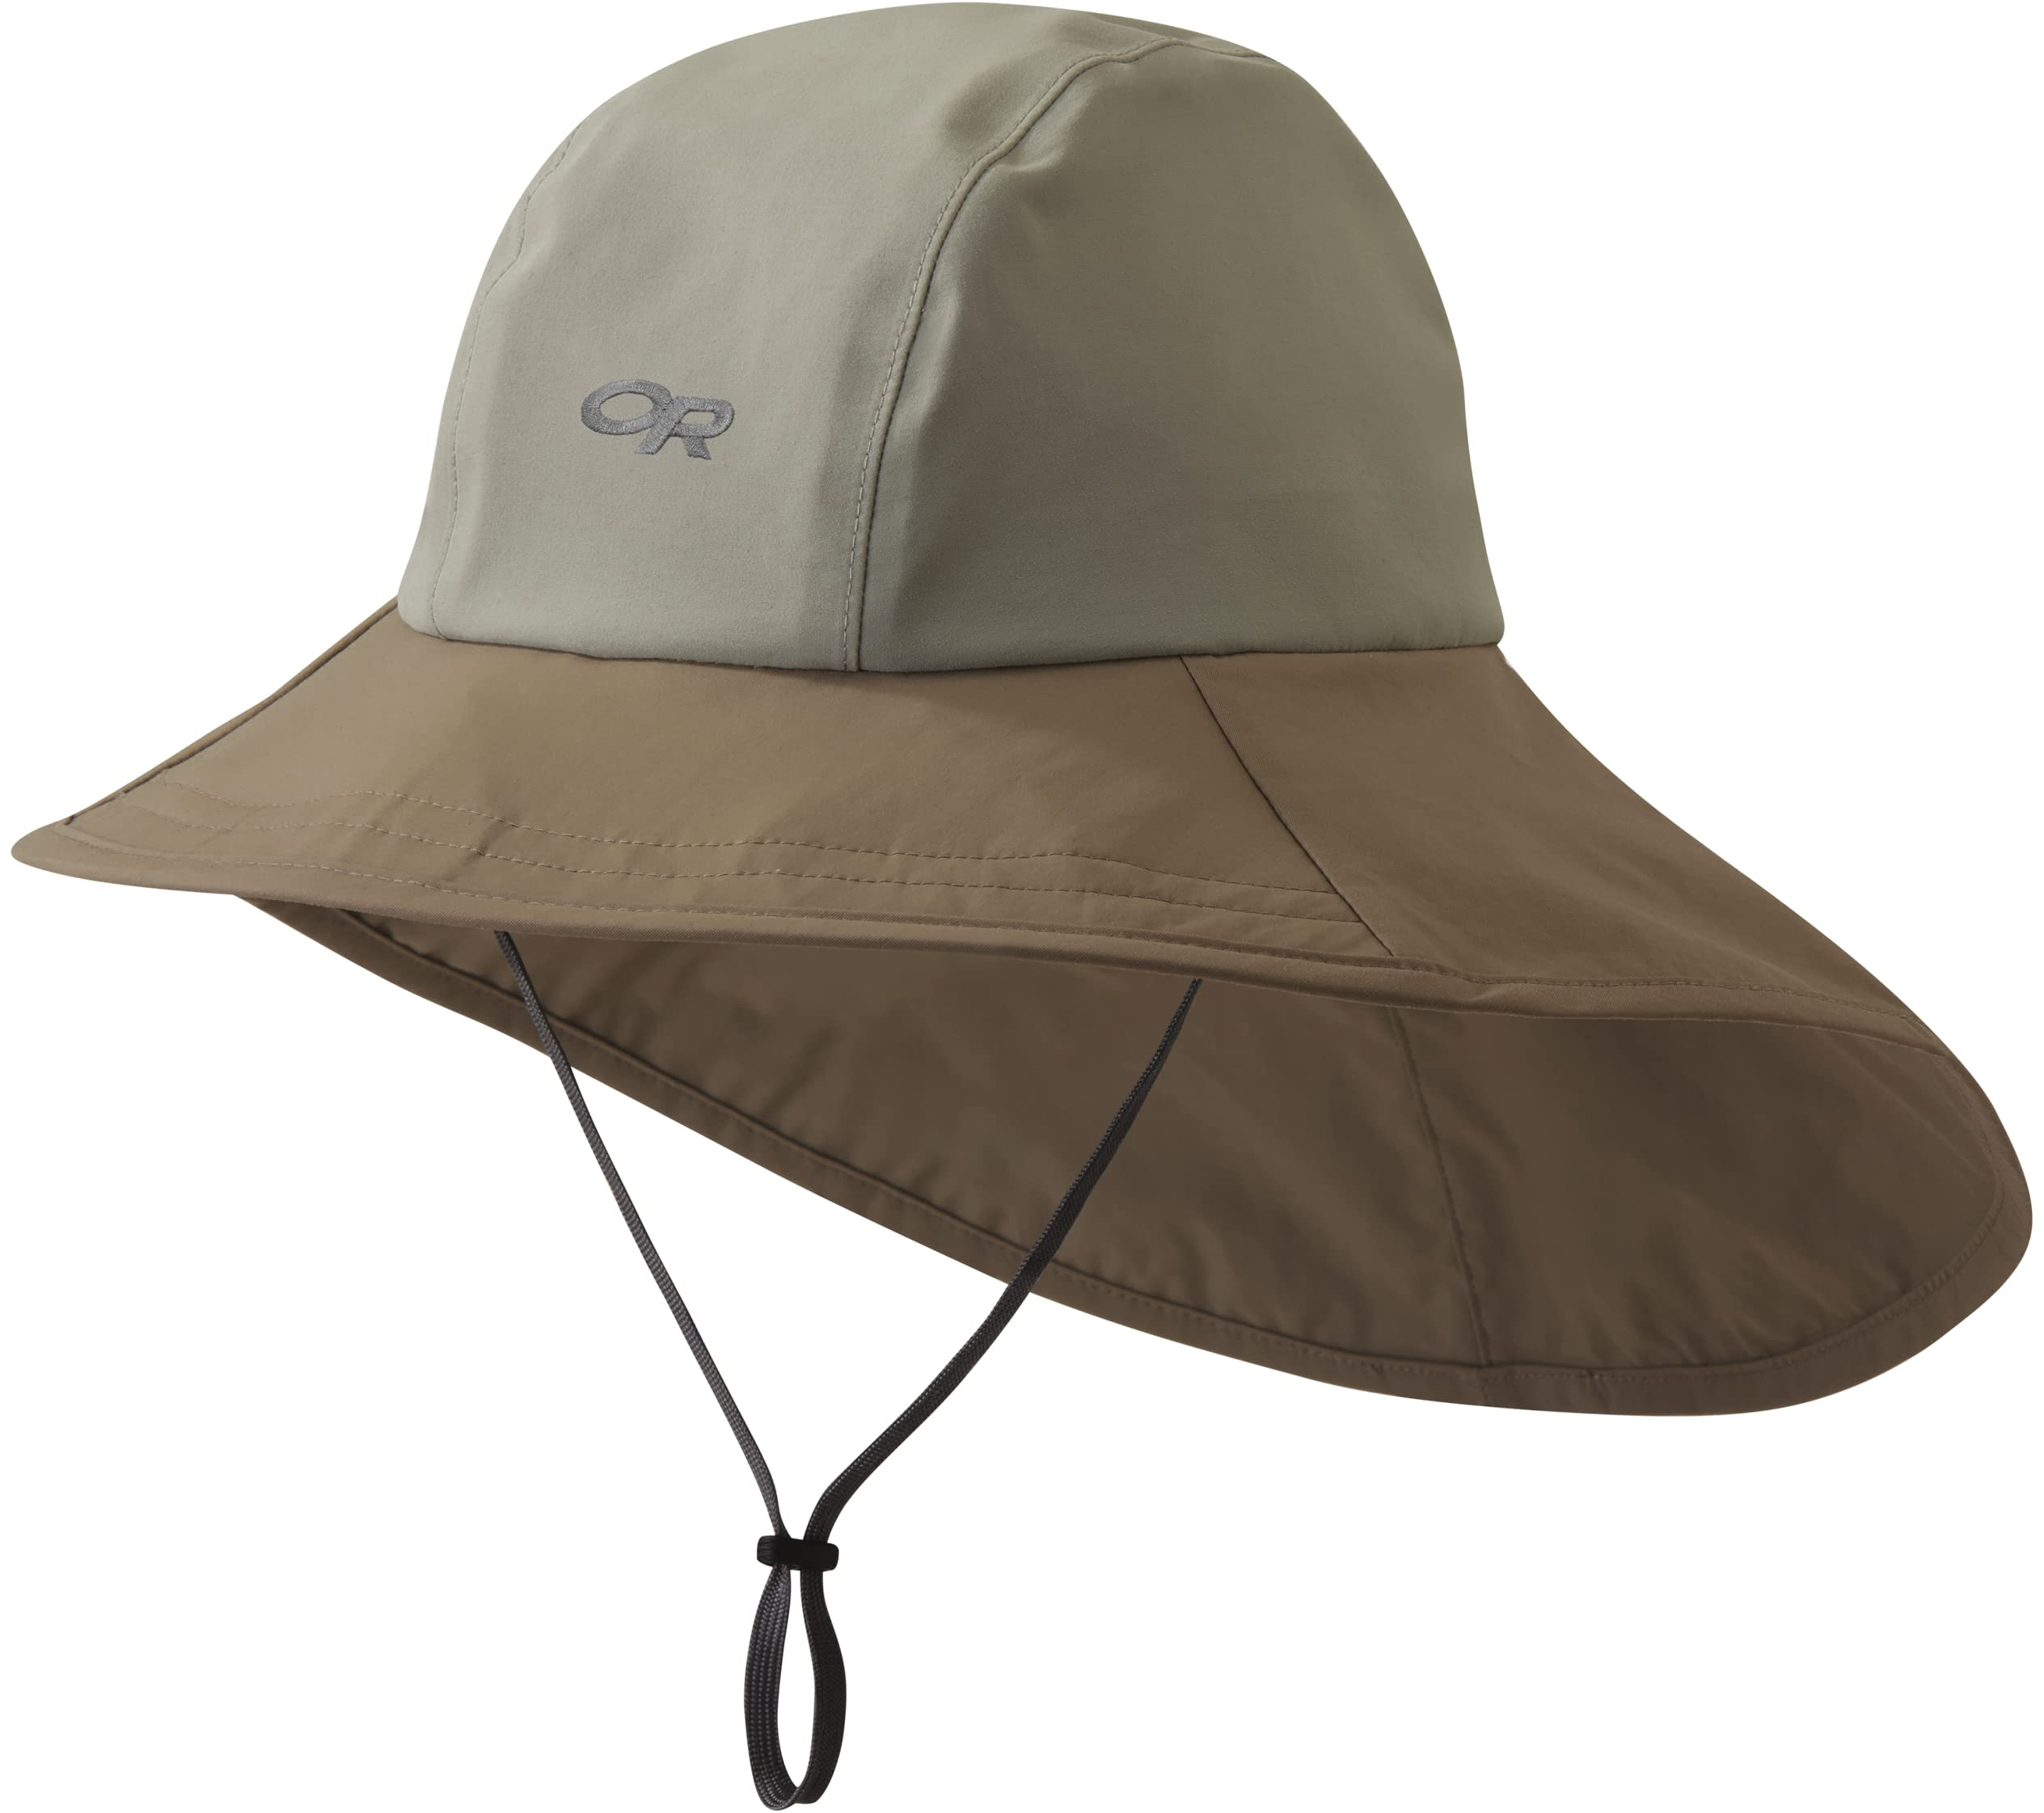 Сиэтлская шляпа-накидка Outdoor Research